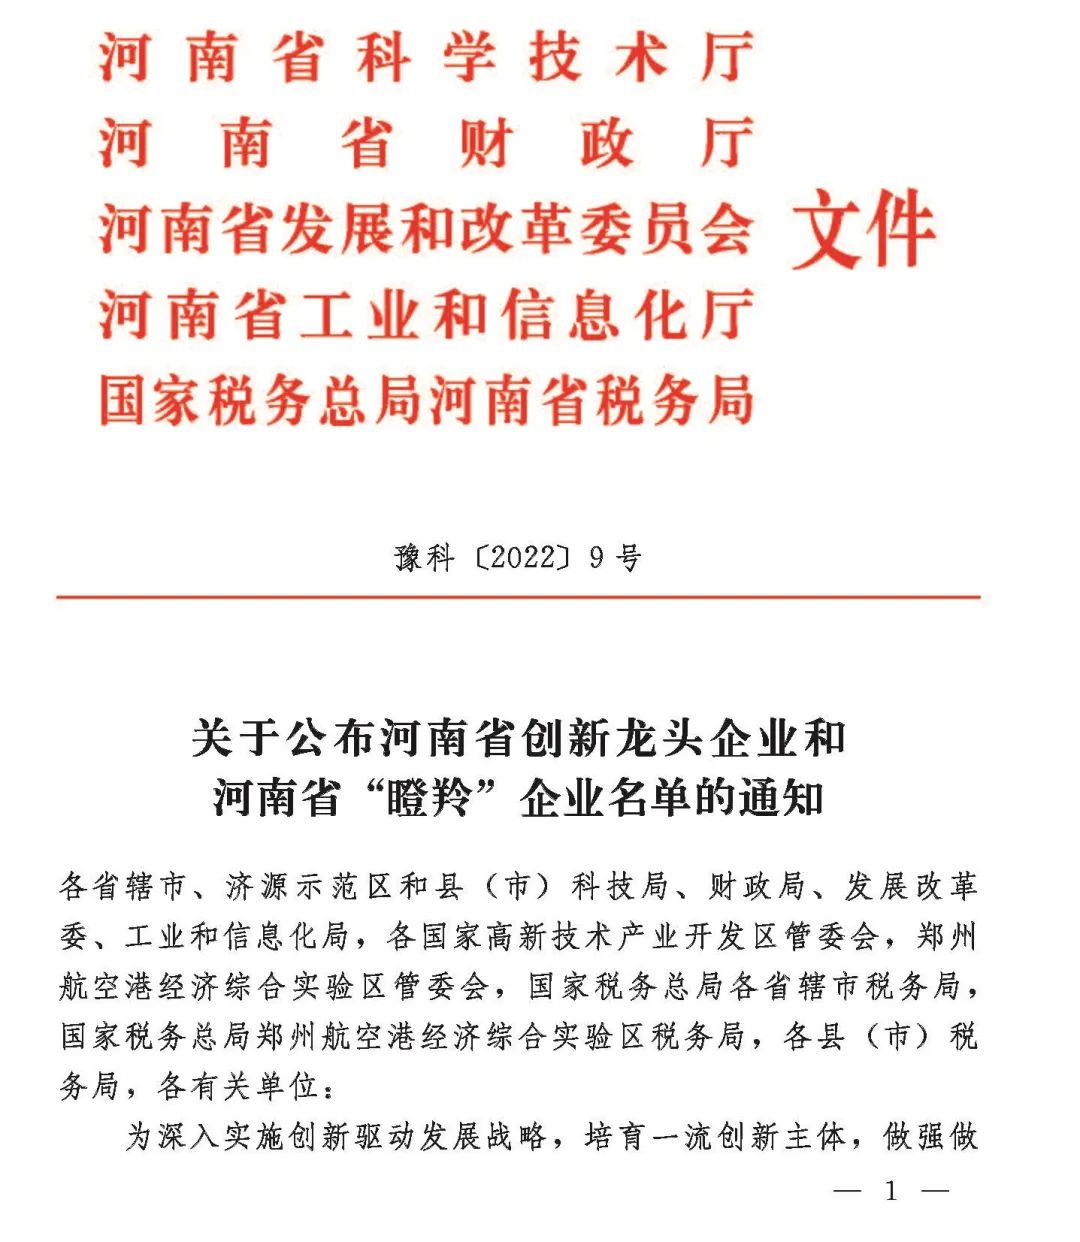 中铝郑州研究院荣获2021年河南省创新龙头企业